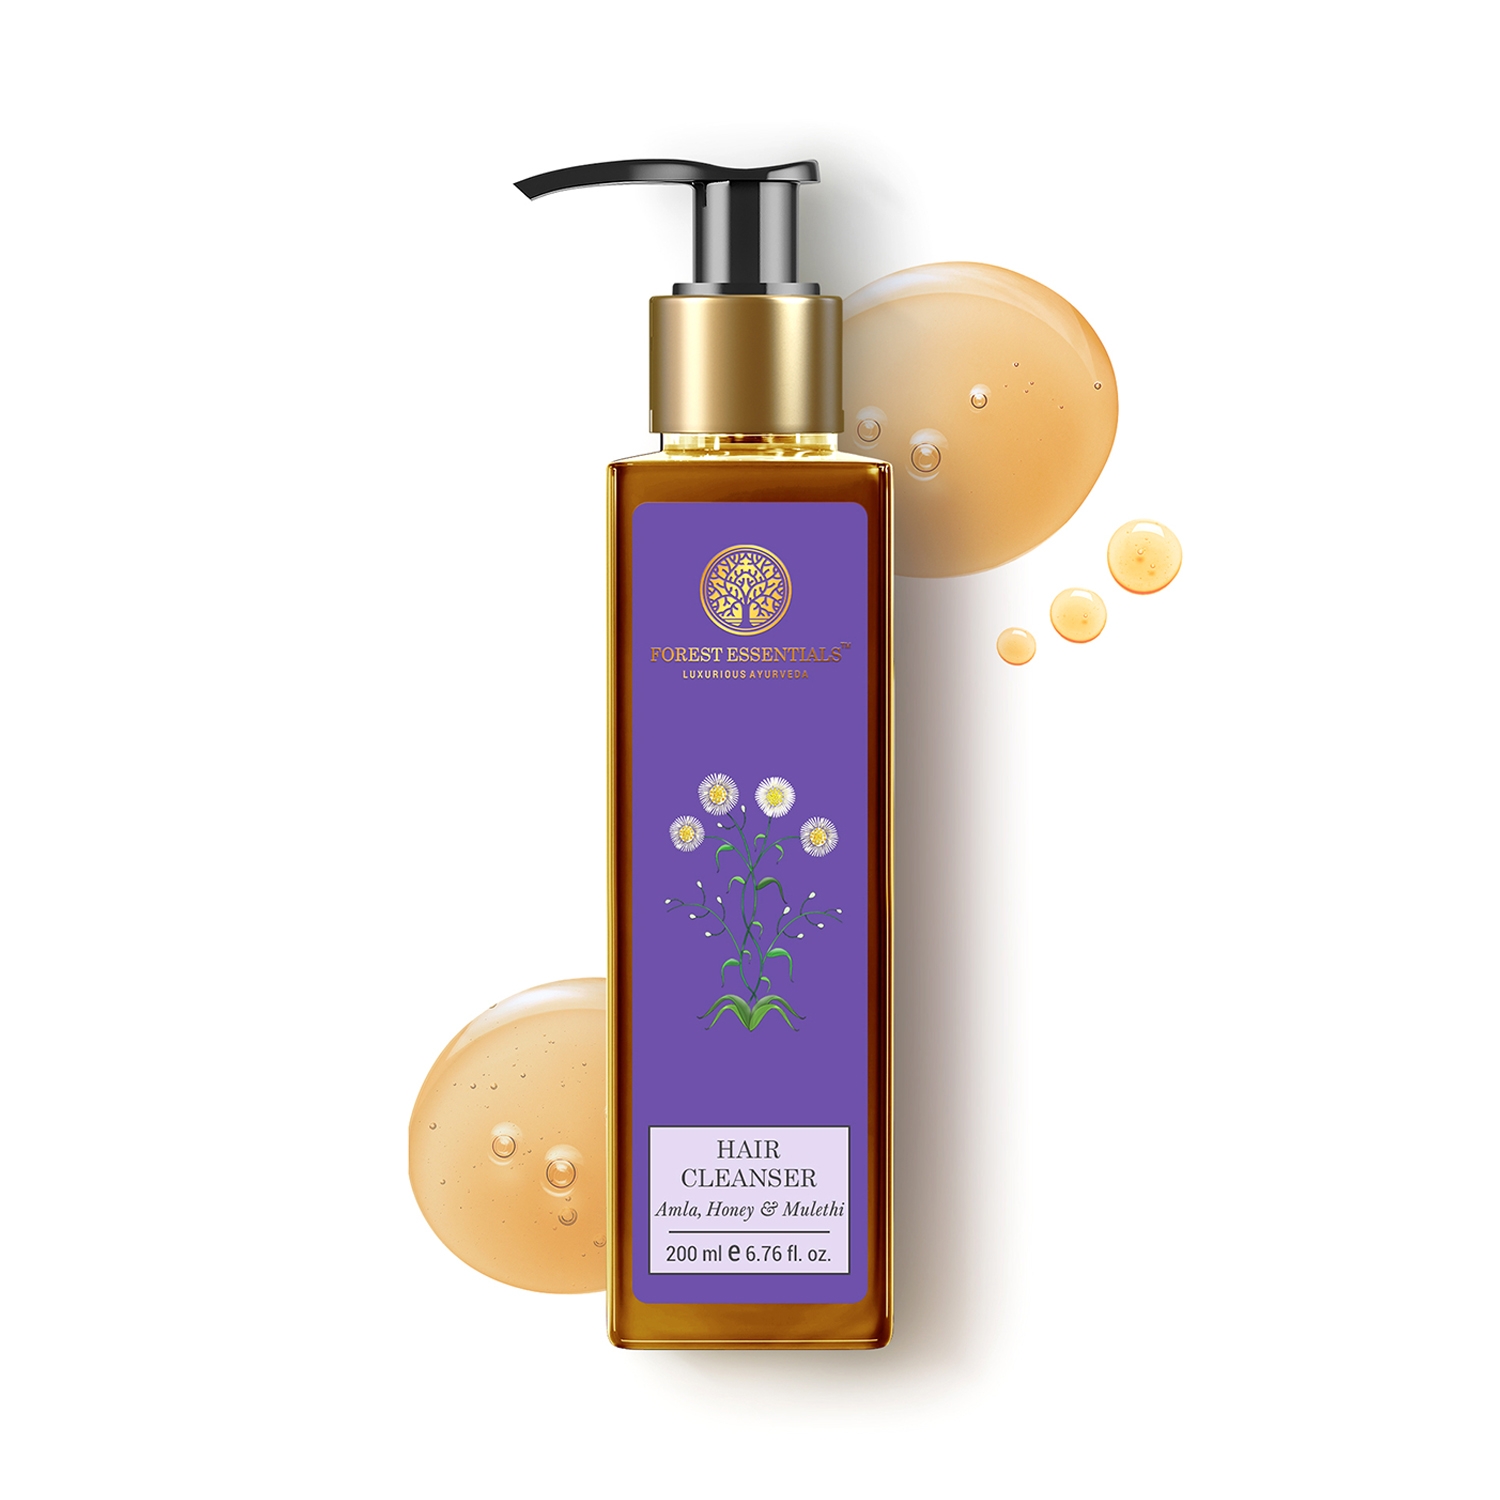 Forest Essentials | Forest Essentials Amla Honey & Mulethi Hair Cleanser Shampoo (200ml)